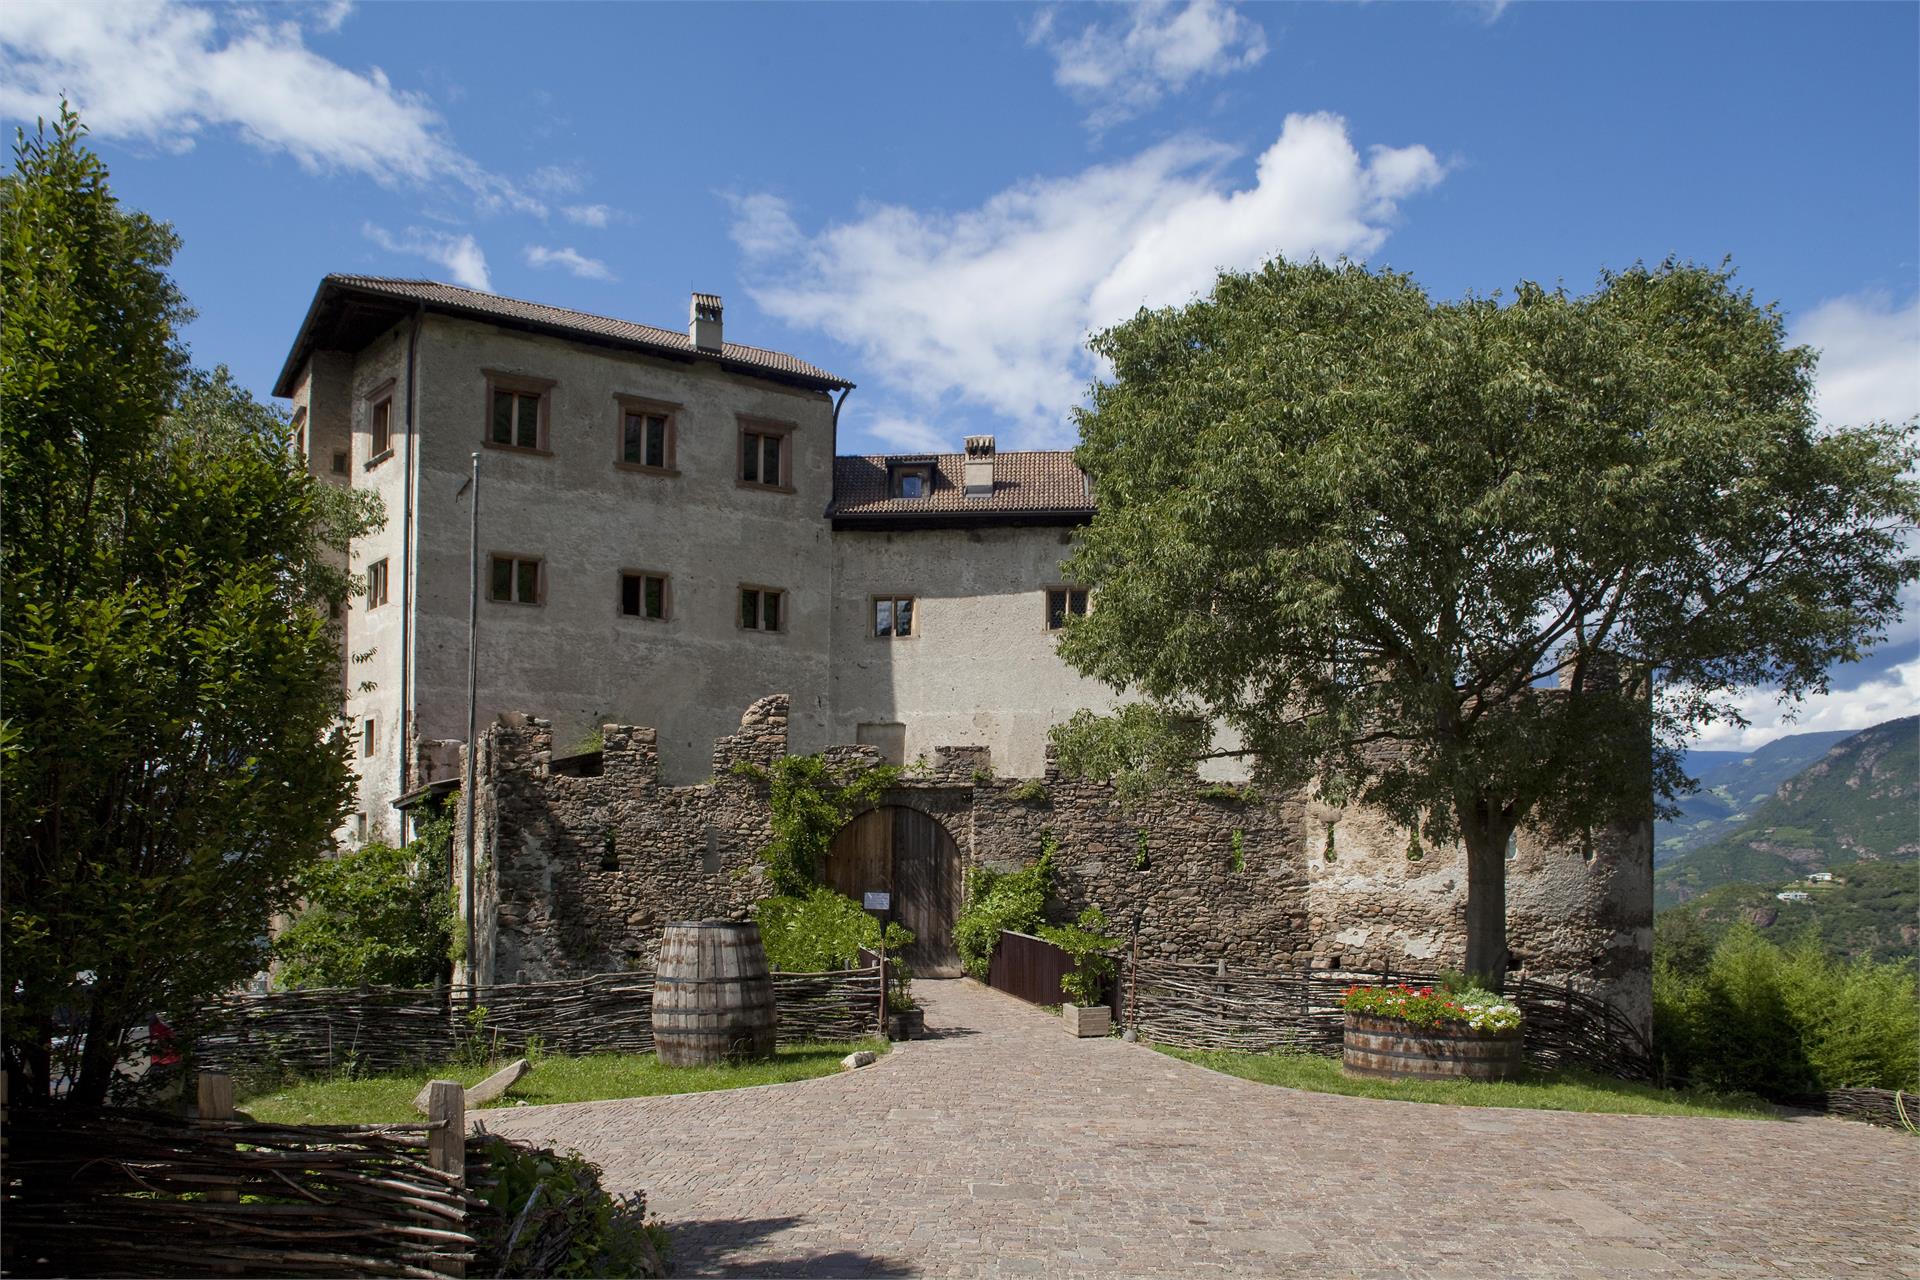 Flavon/Haselburg Castle